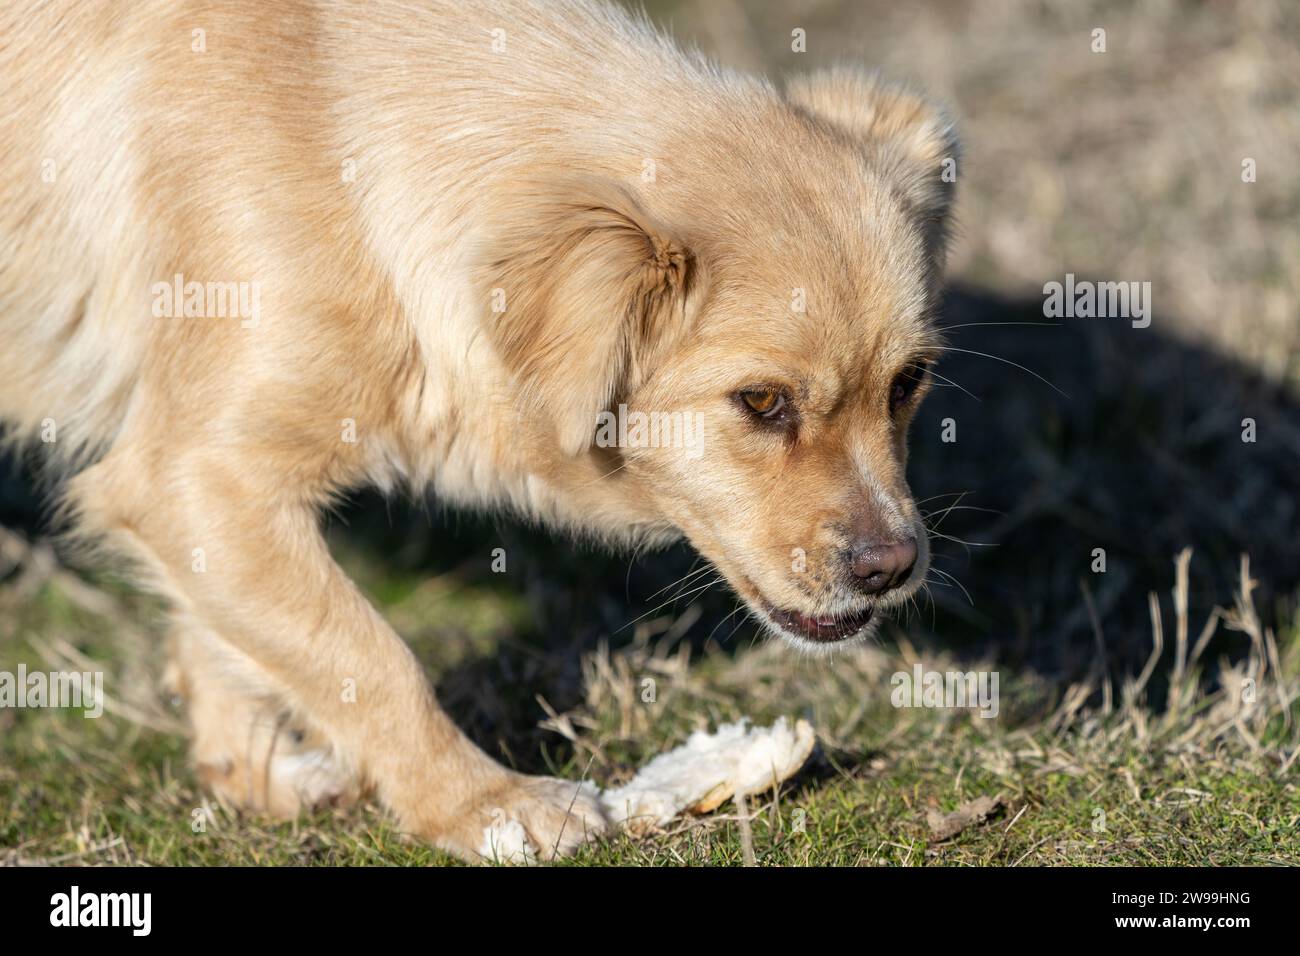 Ritratto del piccolo cucciolo affamato che mangia pane nella natura. Campo d'erba. Cane randagio. Razza mista. Foto Stock